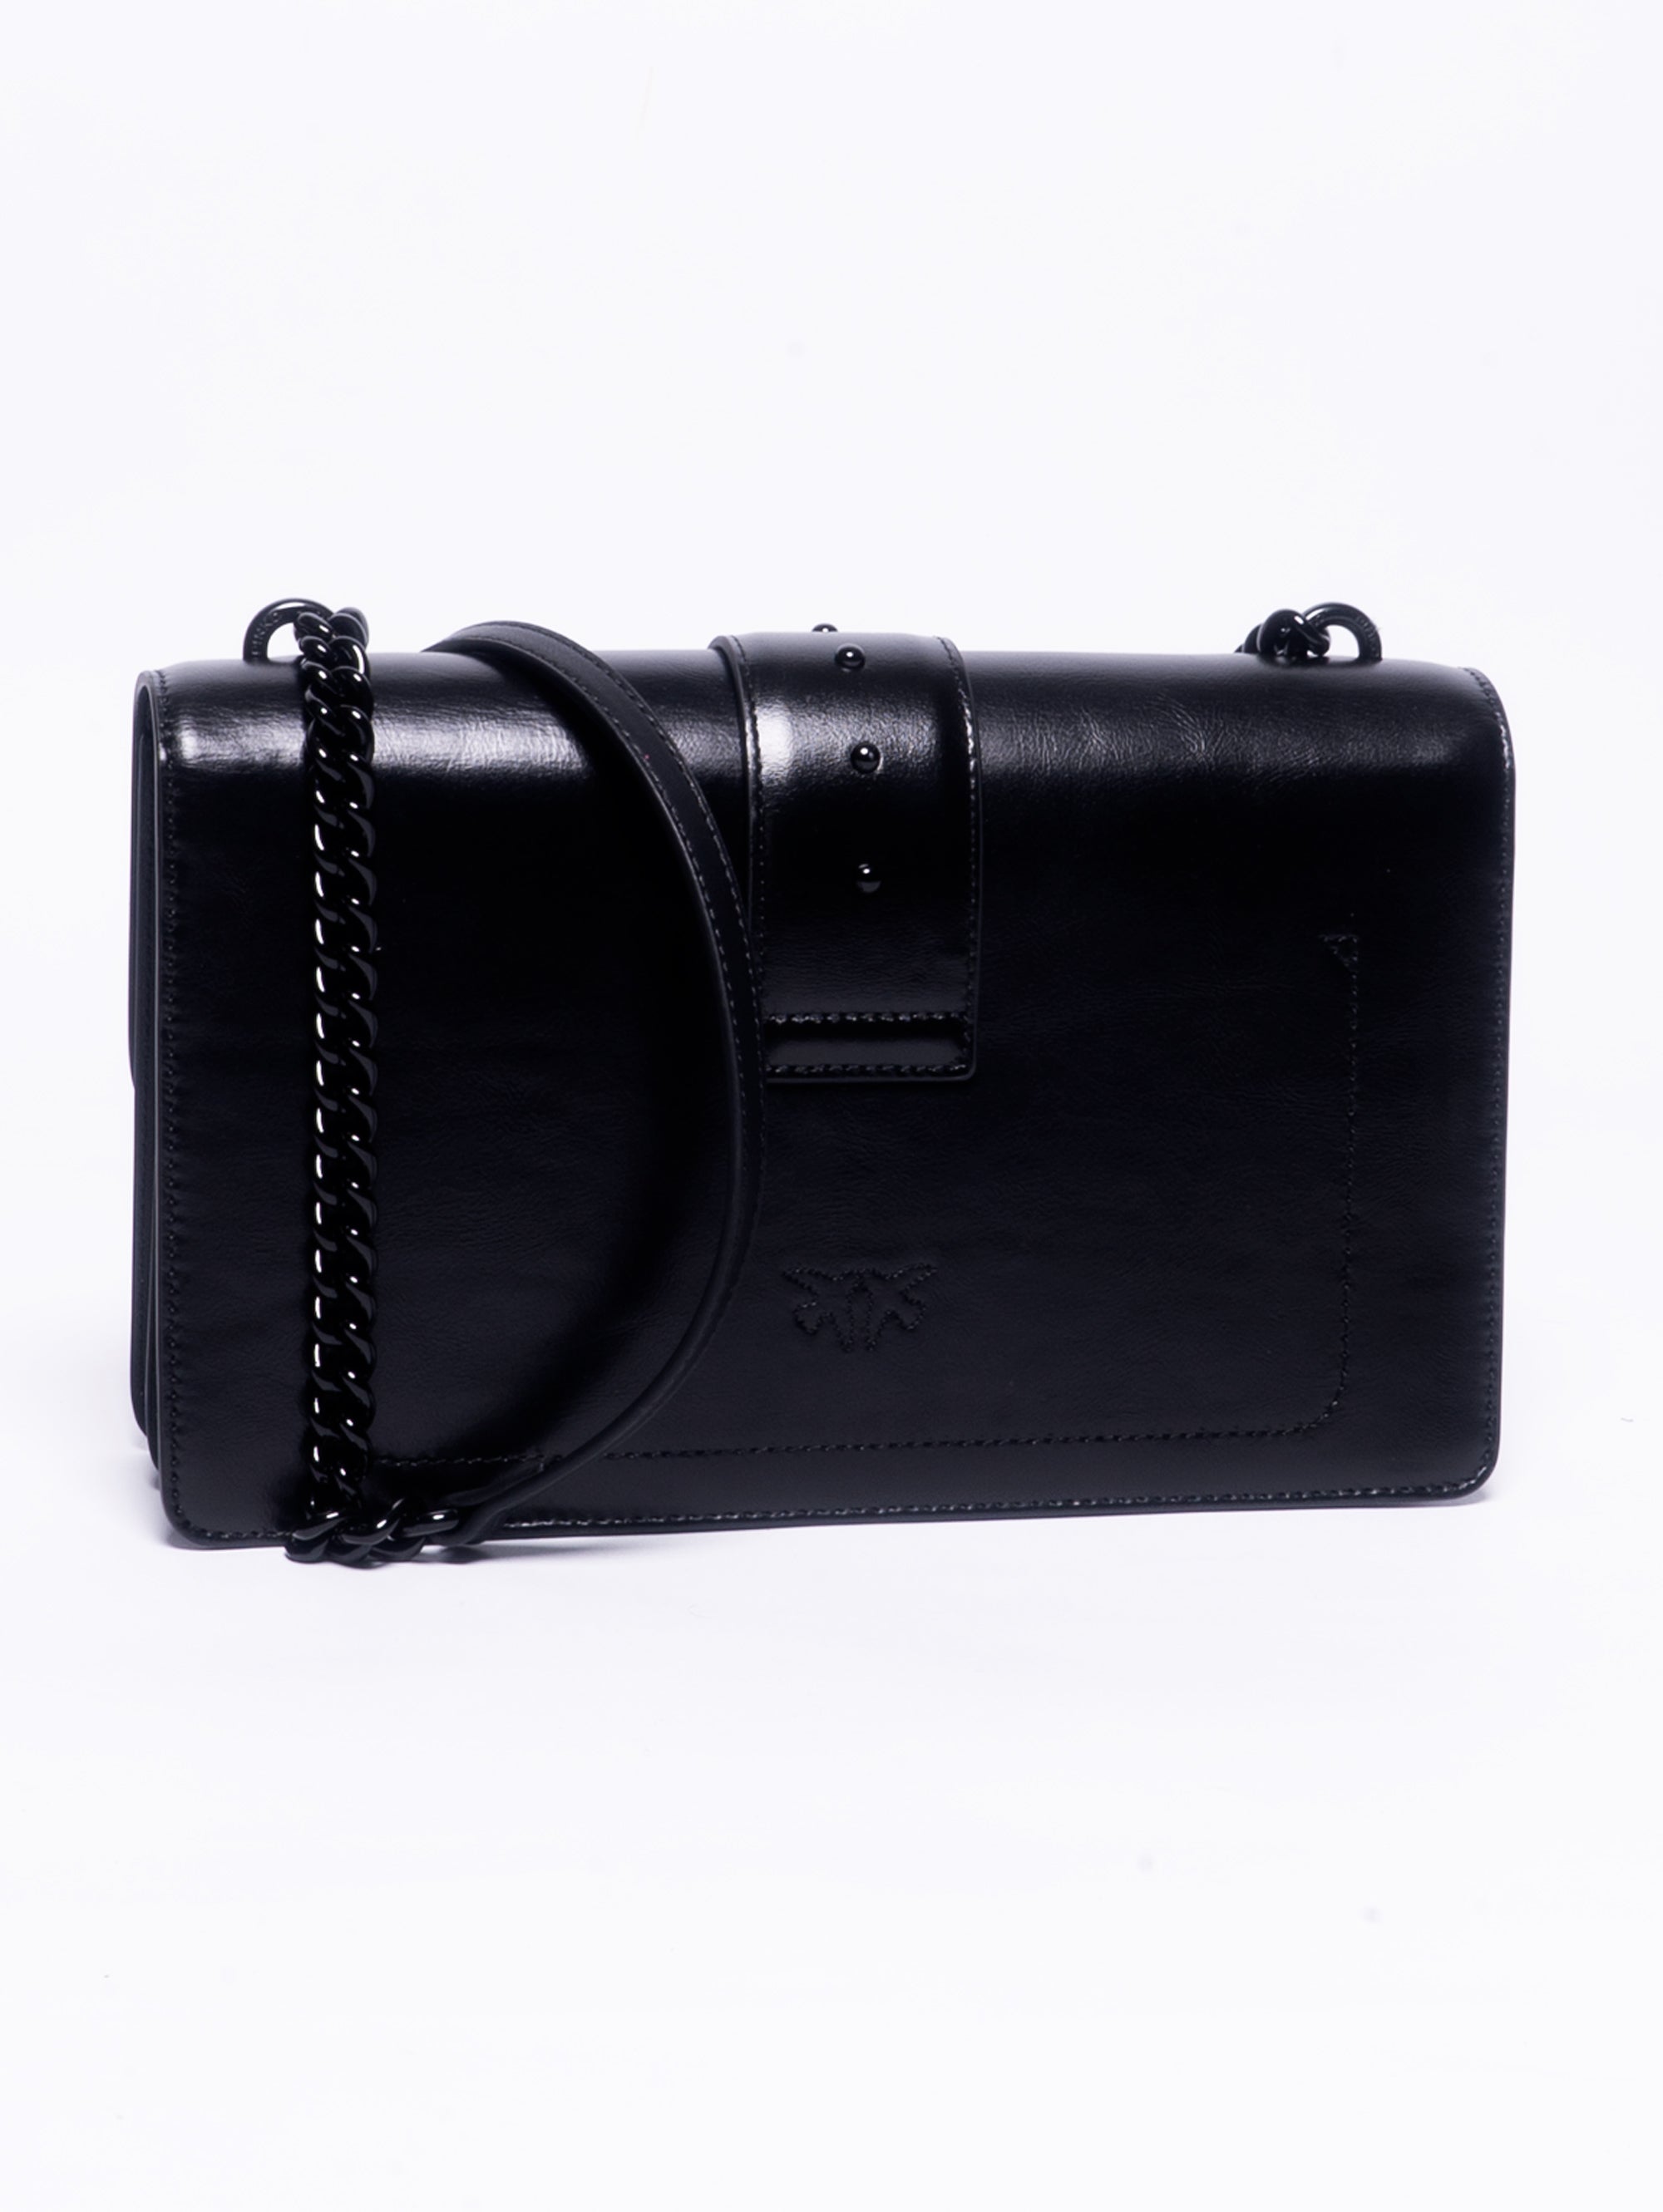 Schwarze, irisierende Nappa-Tasche im Farbblockdesign